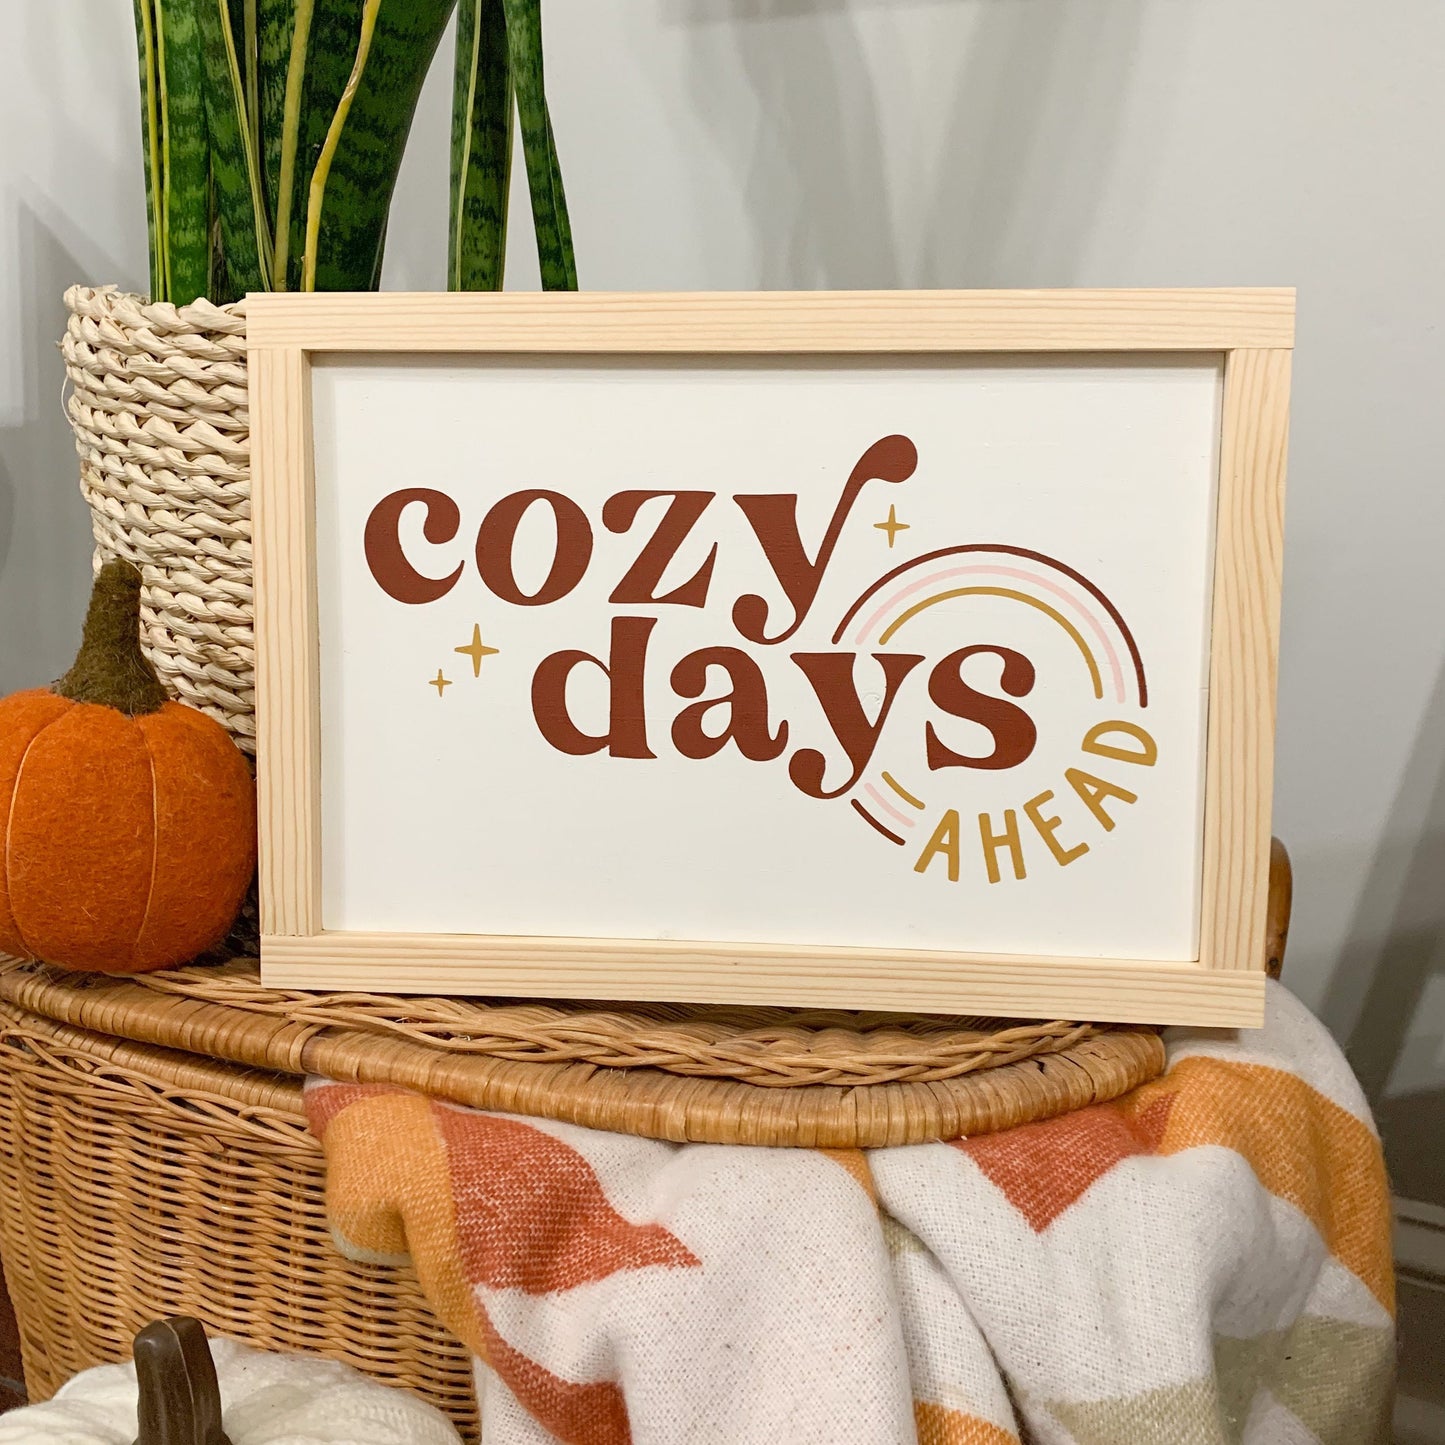 Cozy days ahead, Autumn Fall Framed Sign , Fall Wood Signs, Farmhouse Fall Decor, Shelf Decor, Wood sign